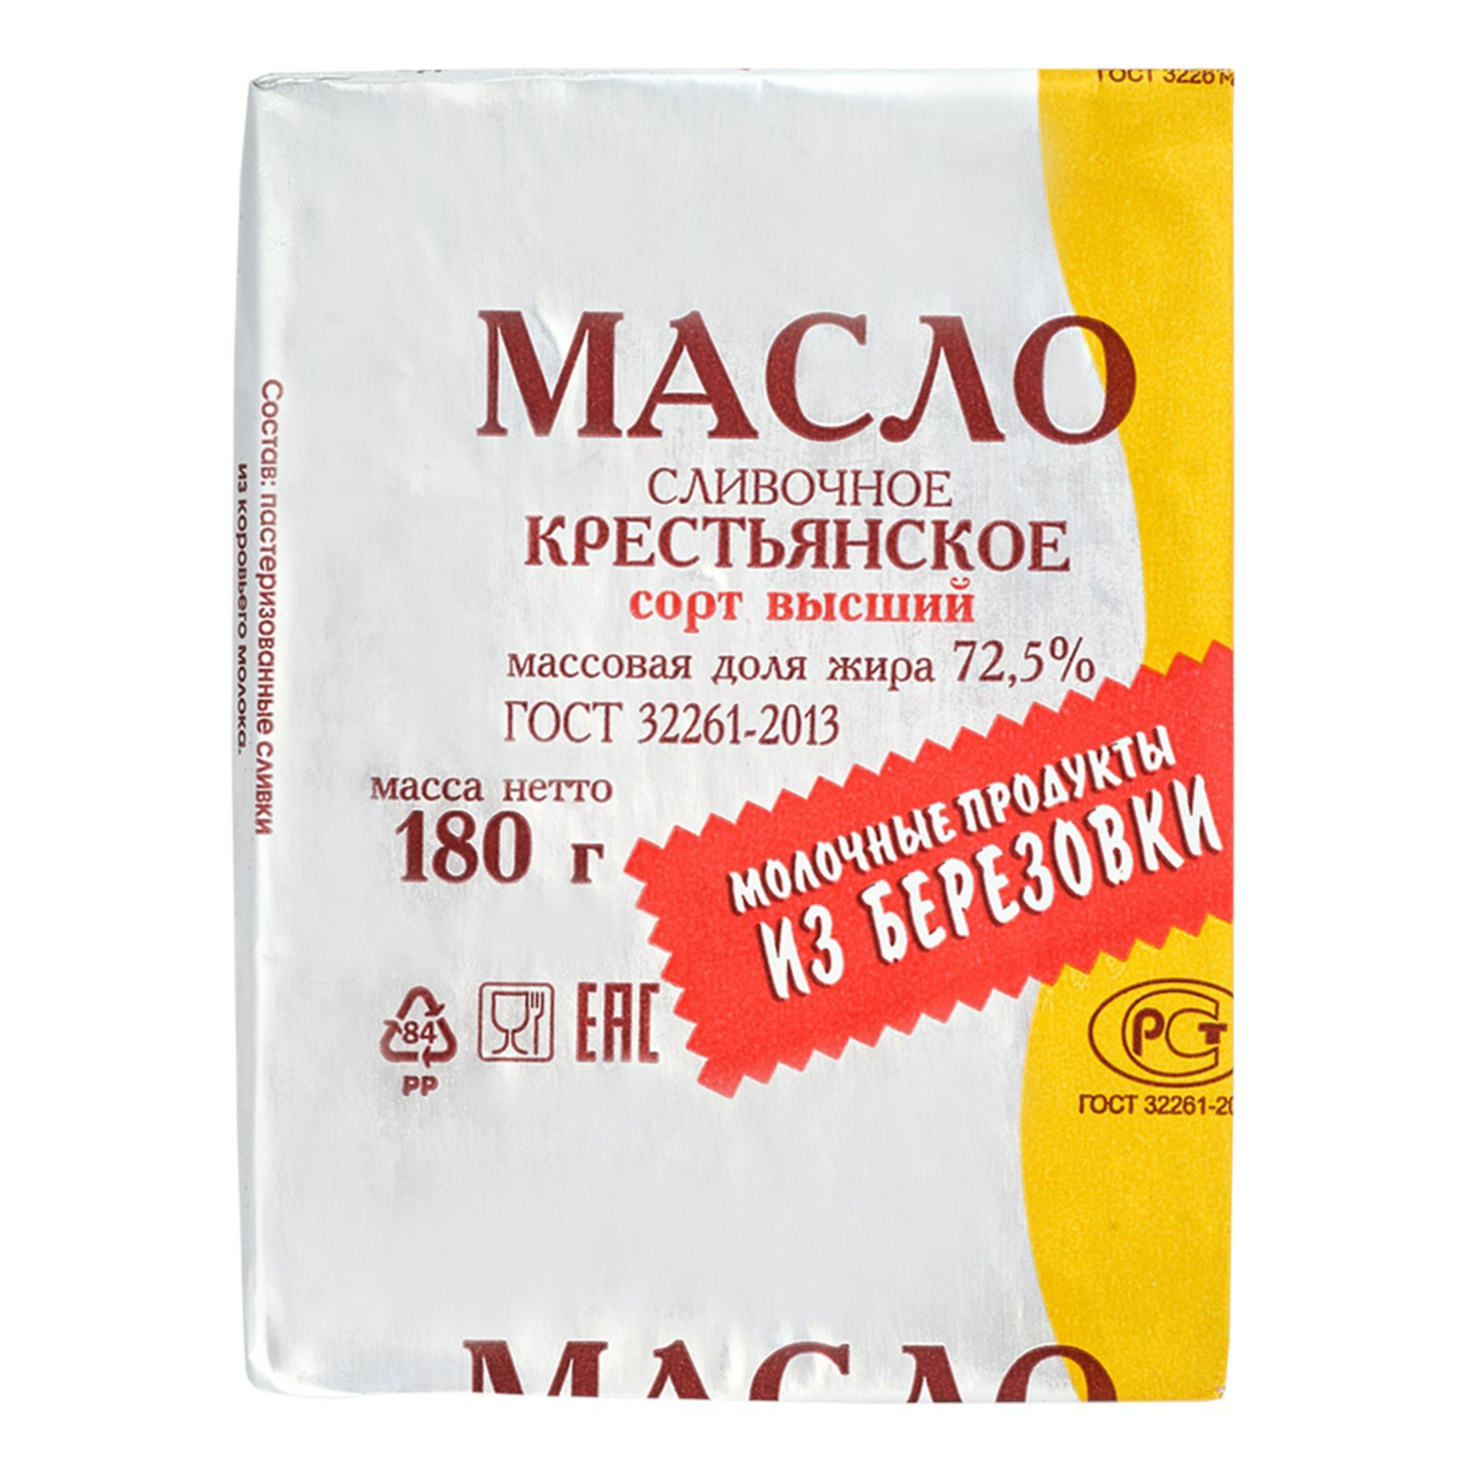 Сладкосливочное масло Молочные продукты из Березовки 72,5% БЗМЖ 180 г